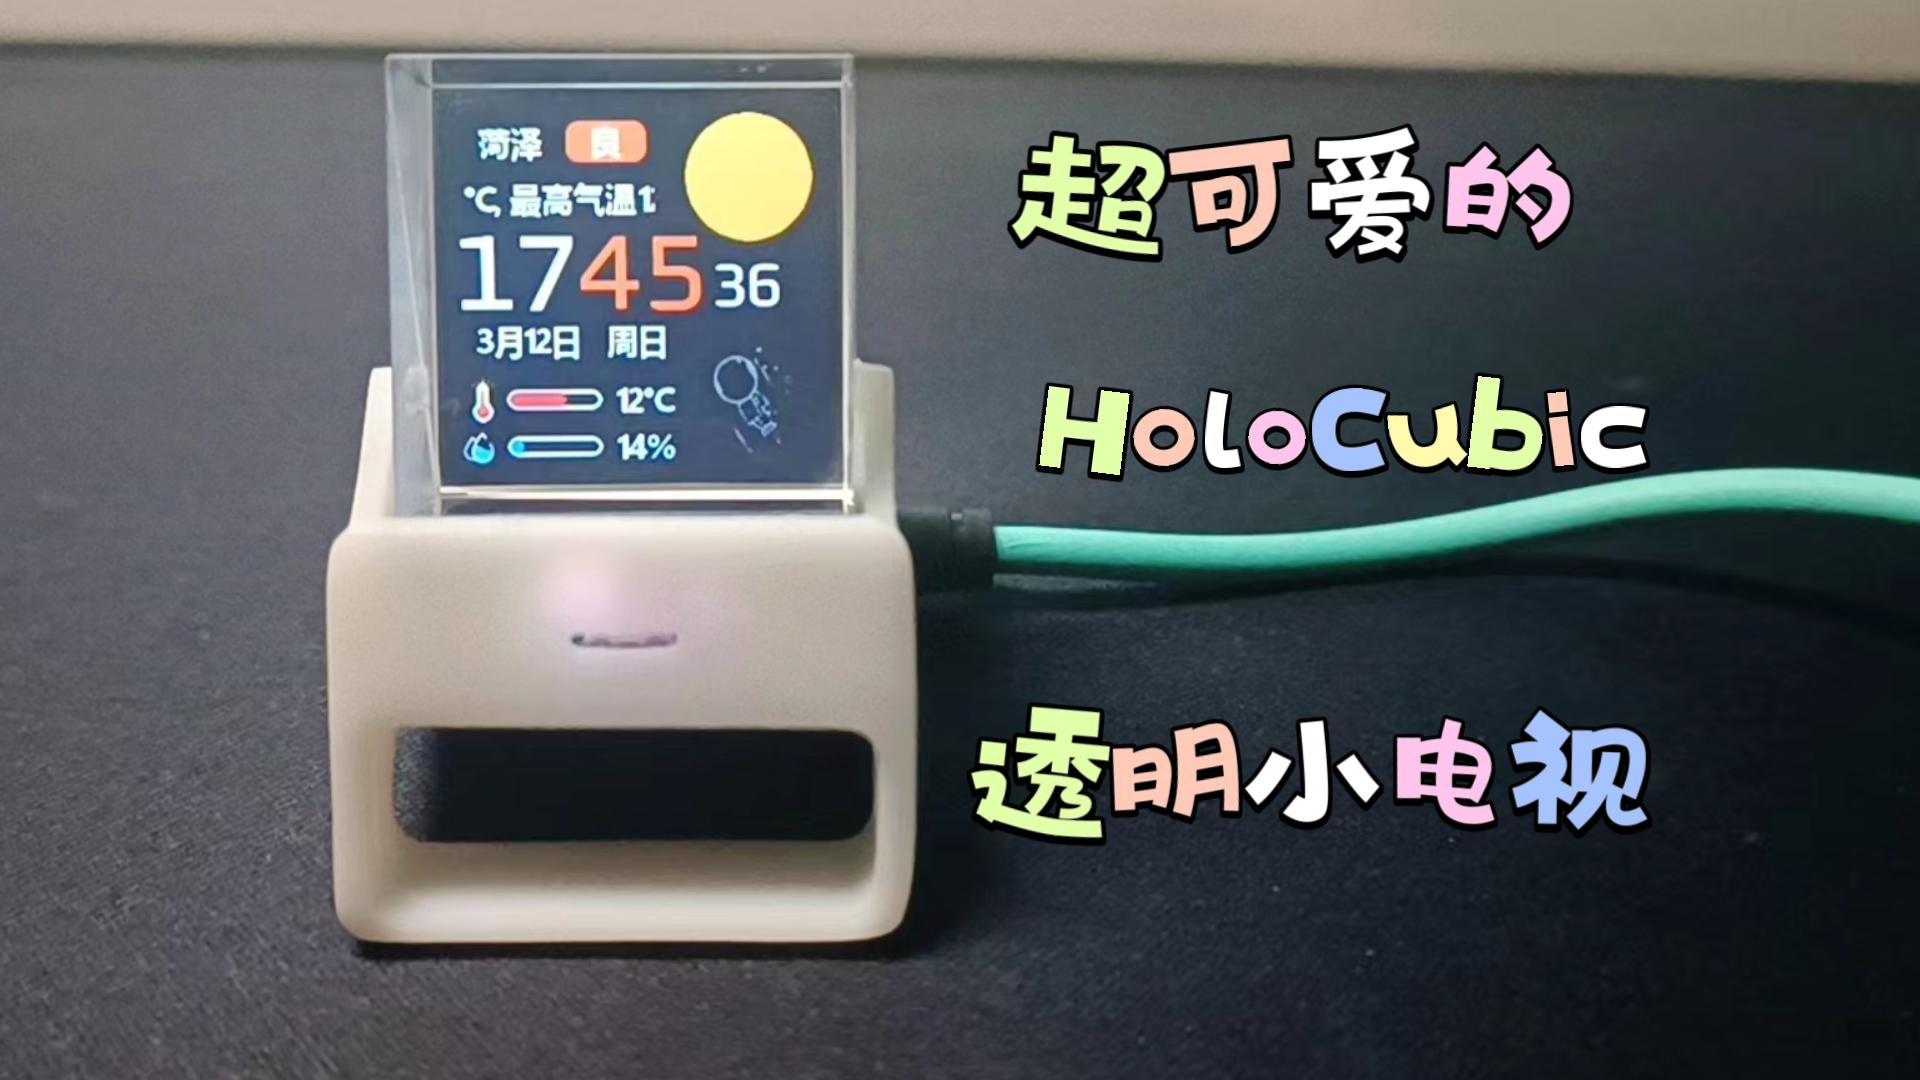 【开源复刻】稚晖君的HoloCubic小电视